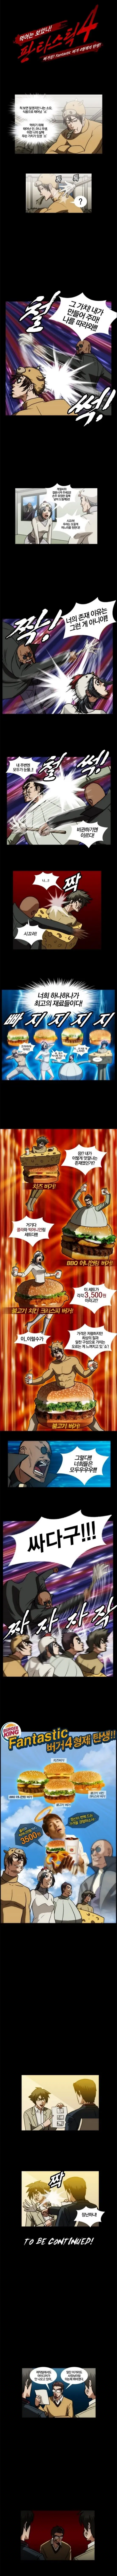 버거킹 광고 레전드.manhwa ㄷㄷㄷ | mbong.kr 엠봉